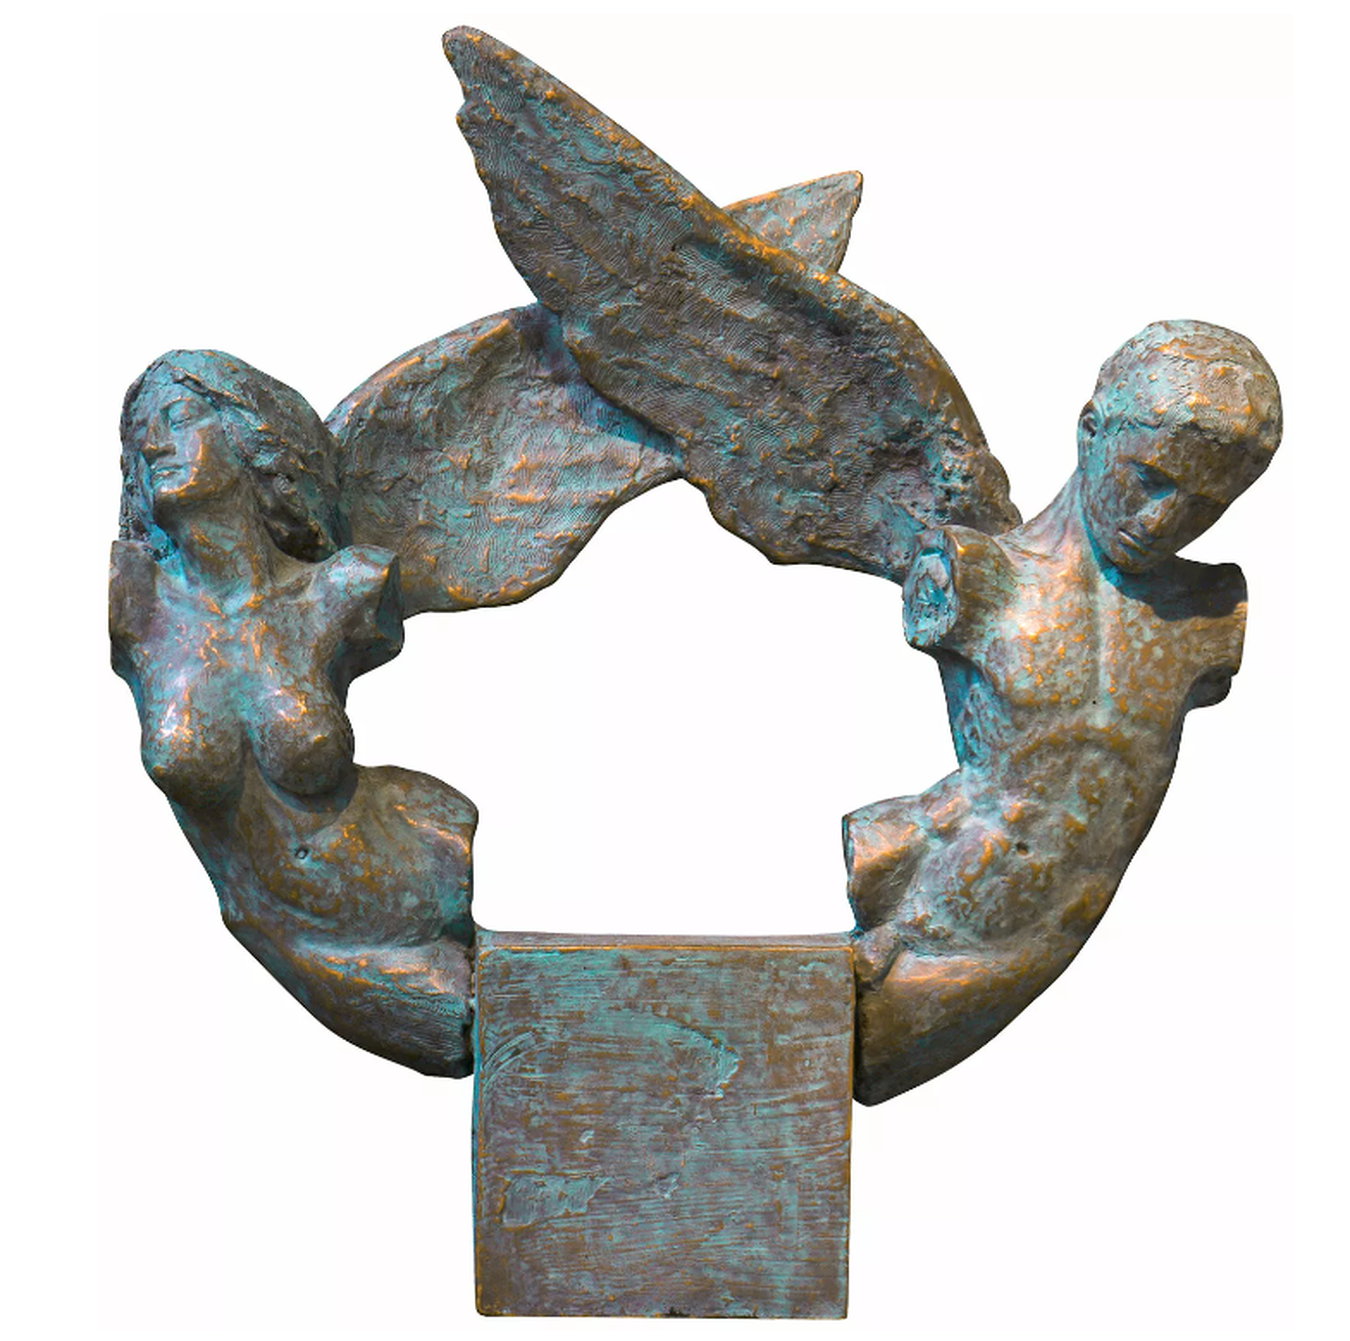 Bronzeskulptur "Ein Paar" von Manfred Reinhart